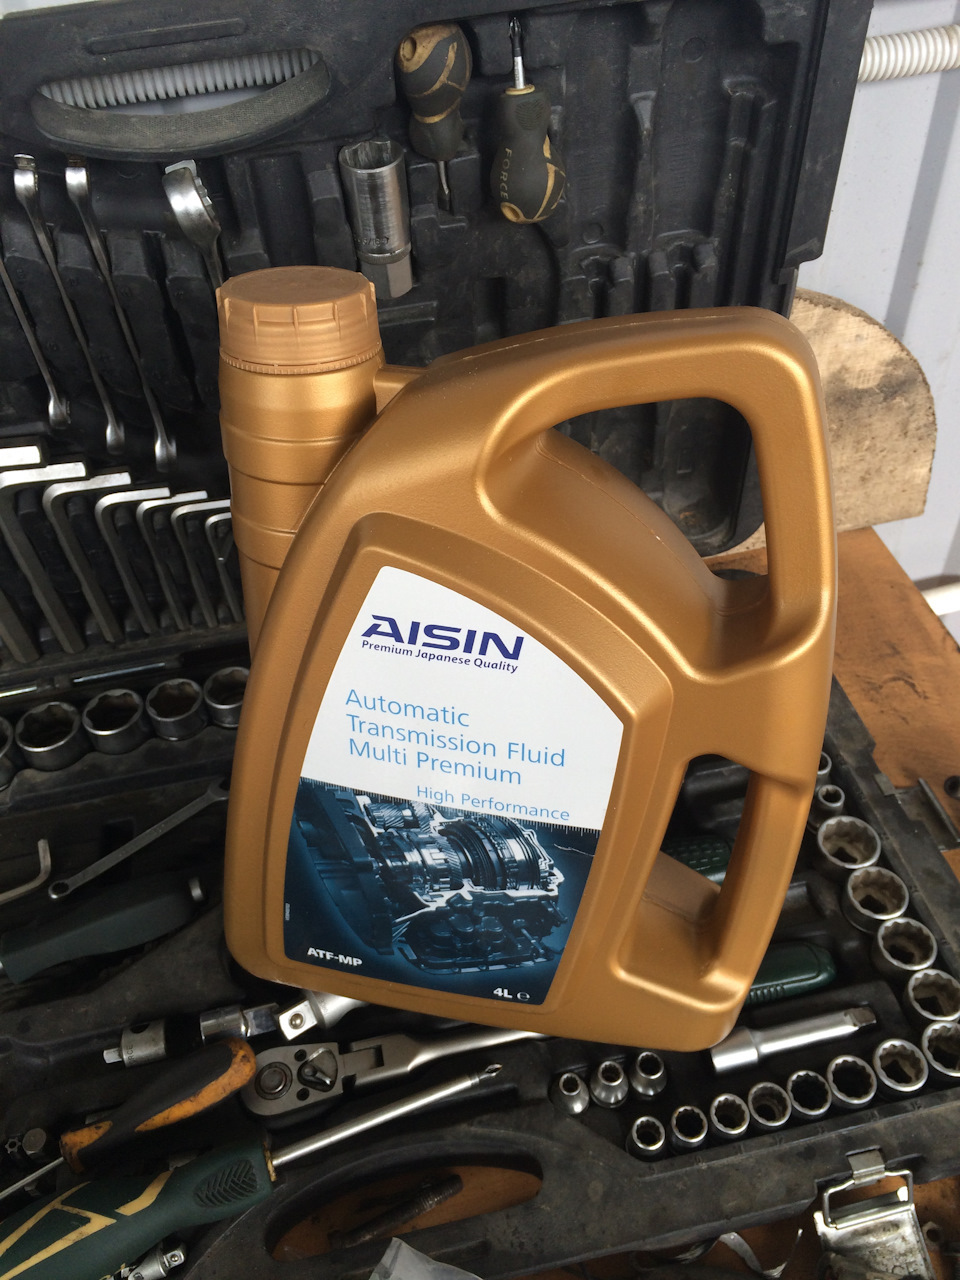 Aisin масло для акпп. AISIN ATF-9004. AISIN TF-70sc. Atf9004. At-f9004.